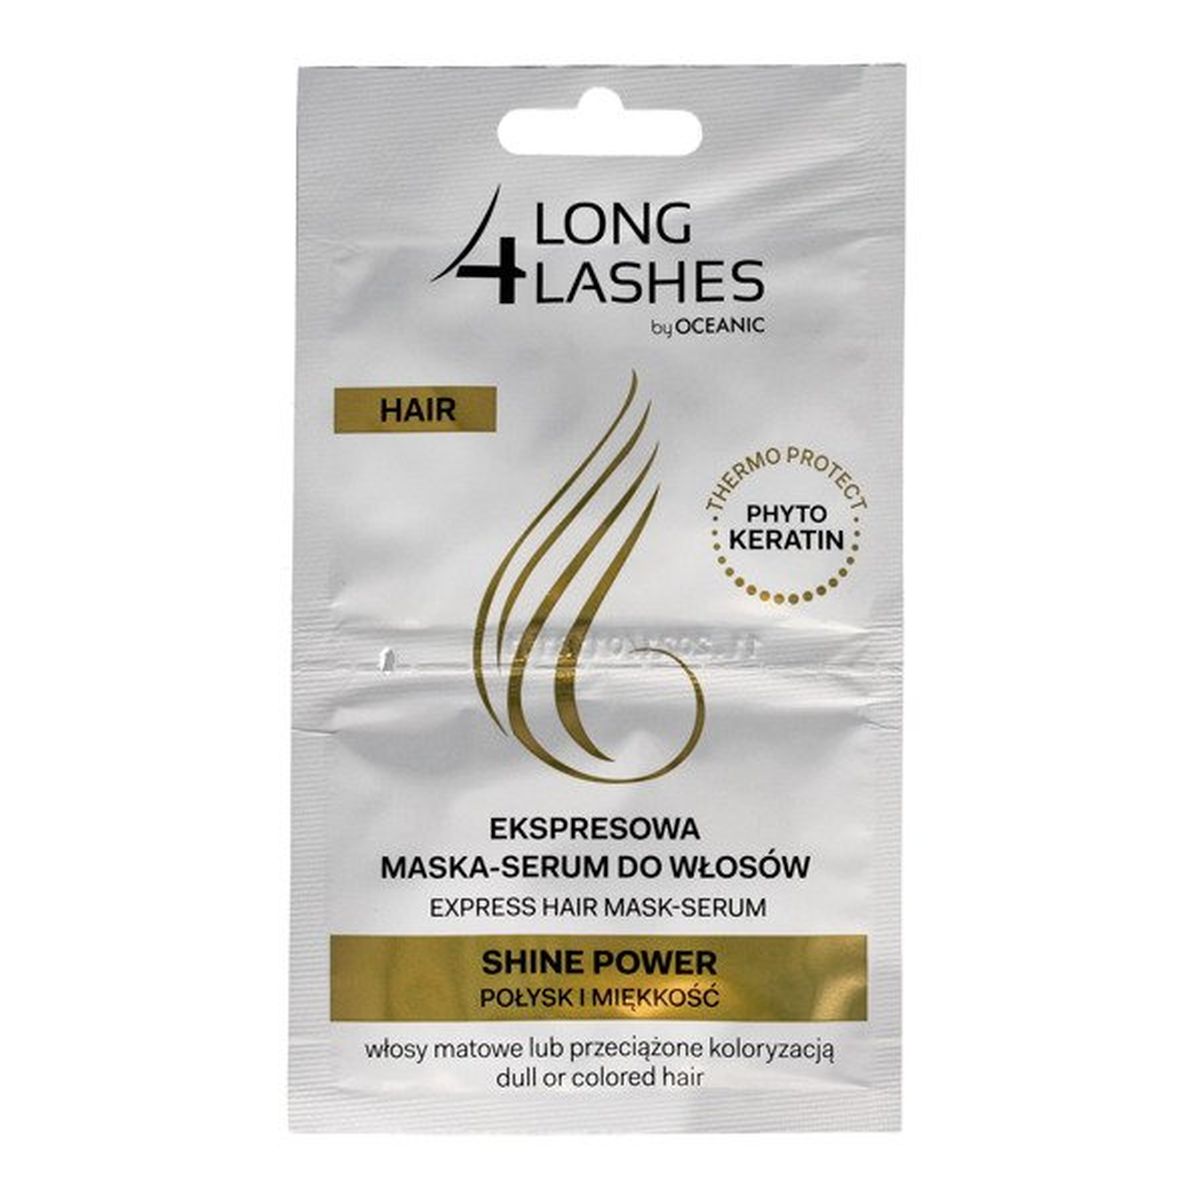 AA Long 4 Lashes Hair Shine Power ekspresowa maska-serum do włosów farbowanych 2 x6ml 12ml